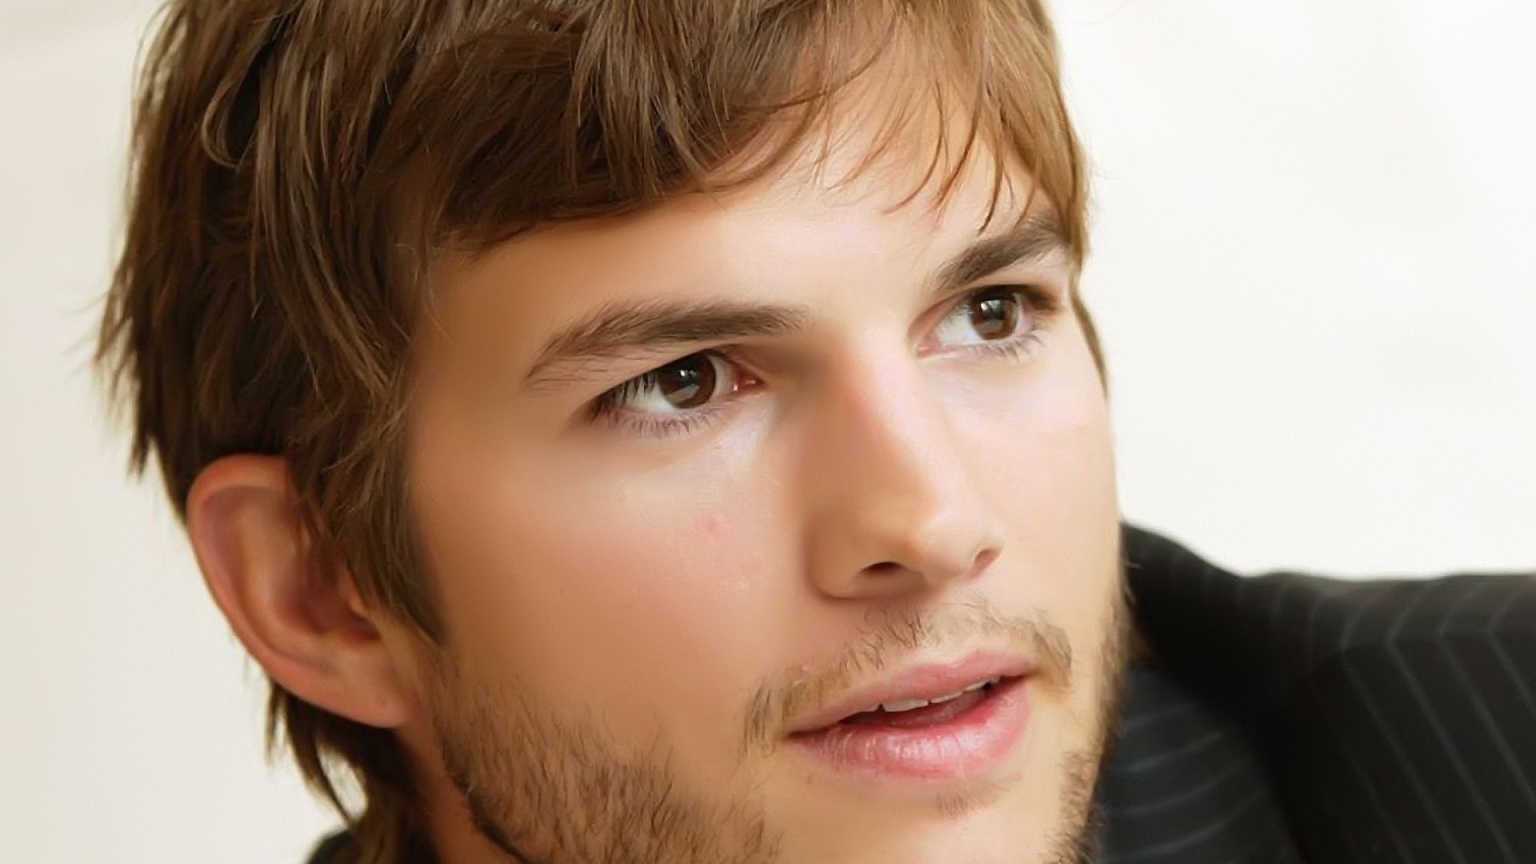 Ashton Kutcher Handsome for 1536 x 864 HDTV resolution